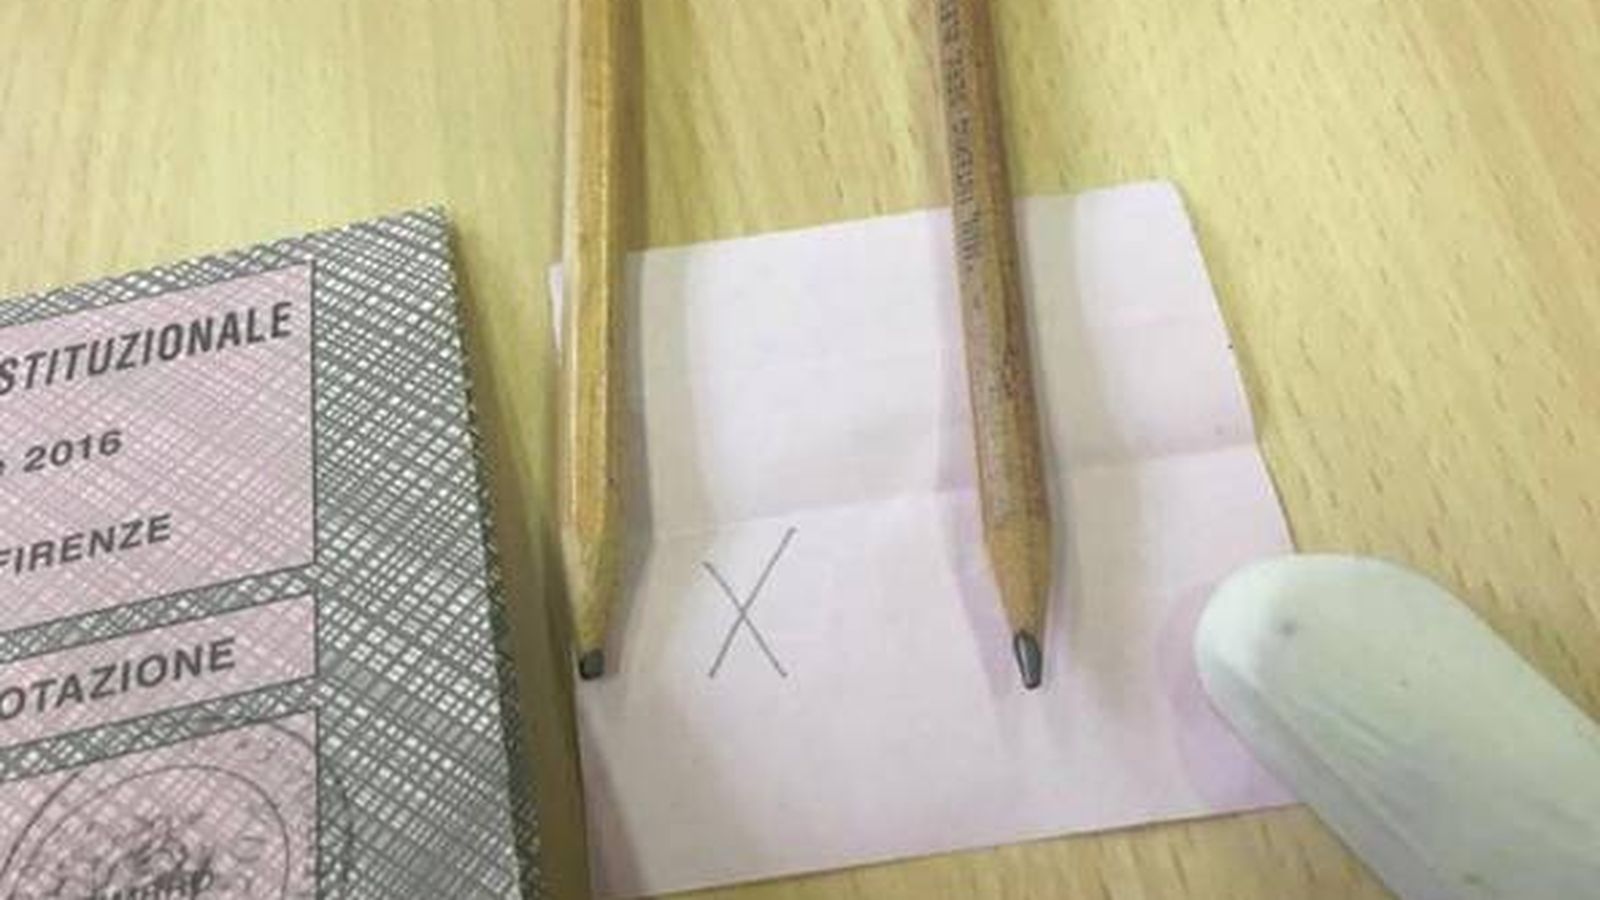 Foto: Denuncian que el trazado de los lápices usados para votar en el referéndum de Italia se puede borrar (Facebook)